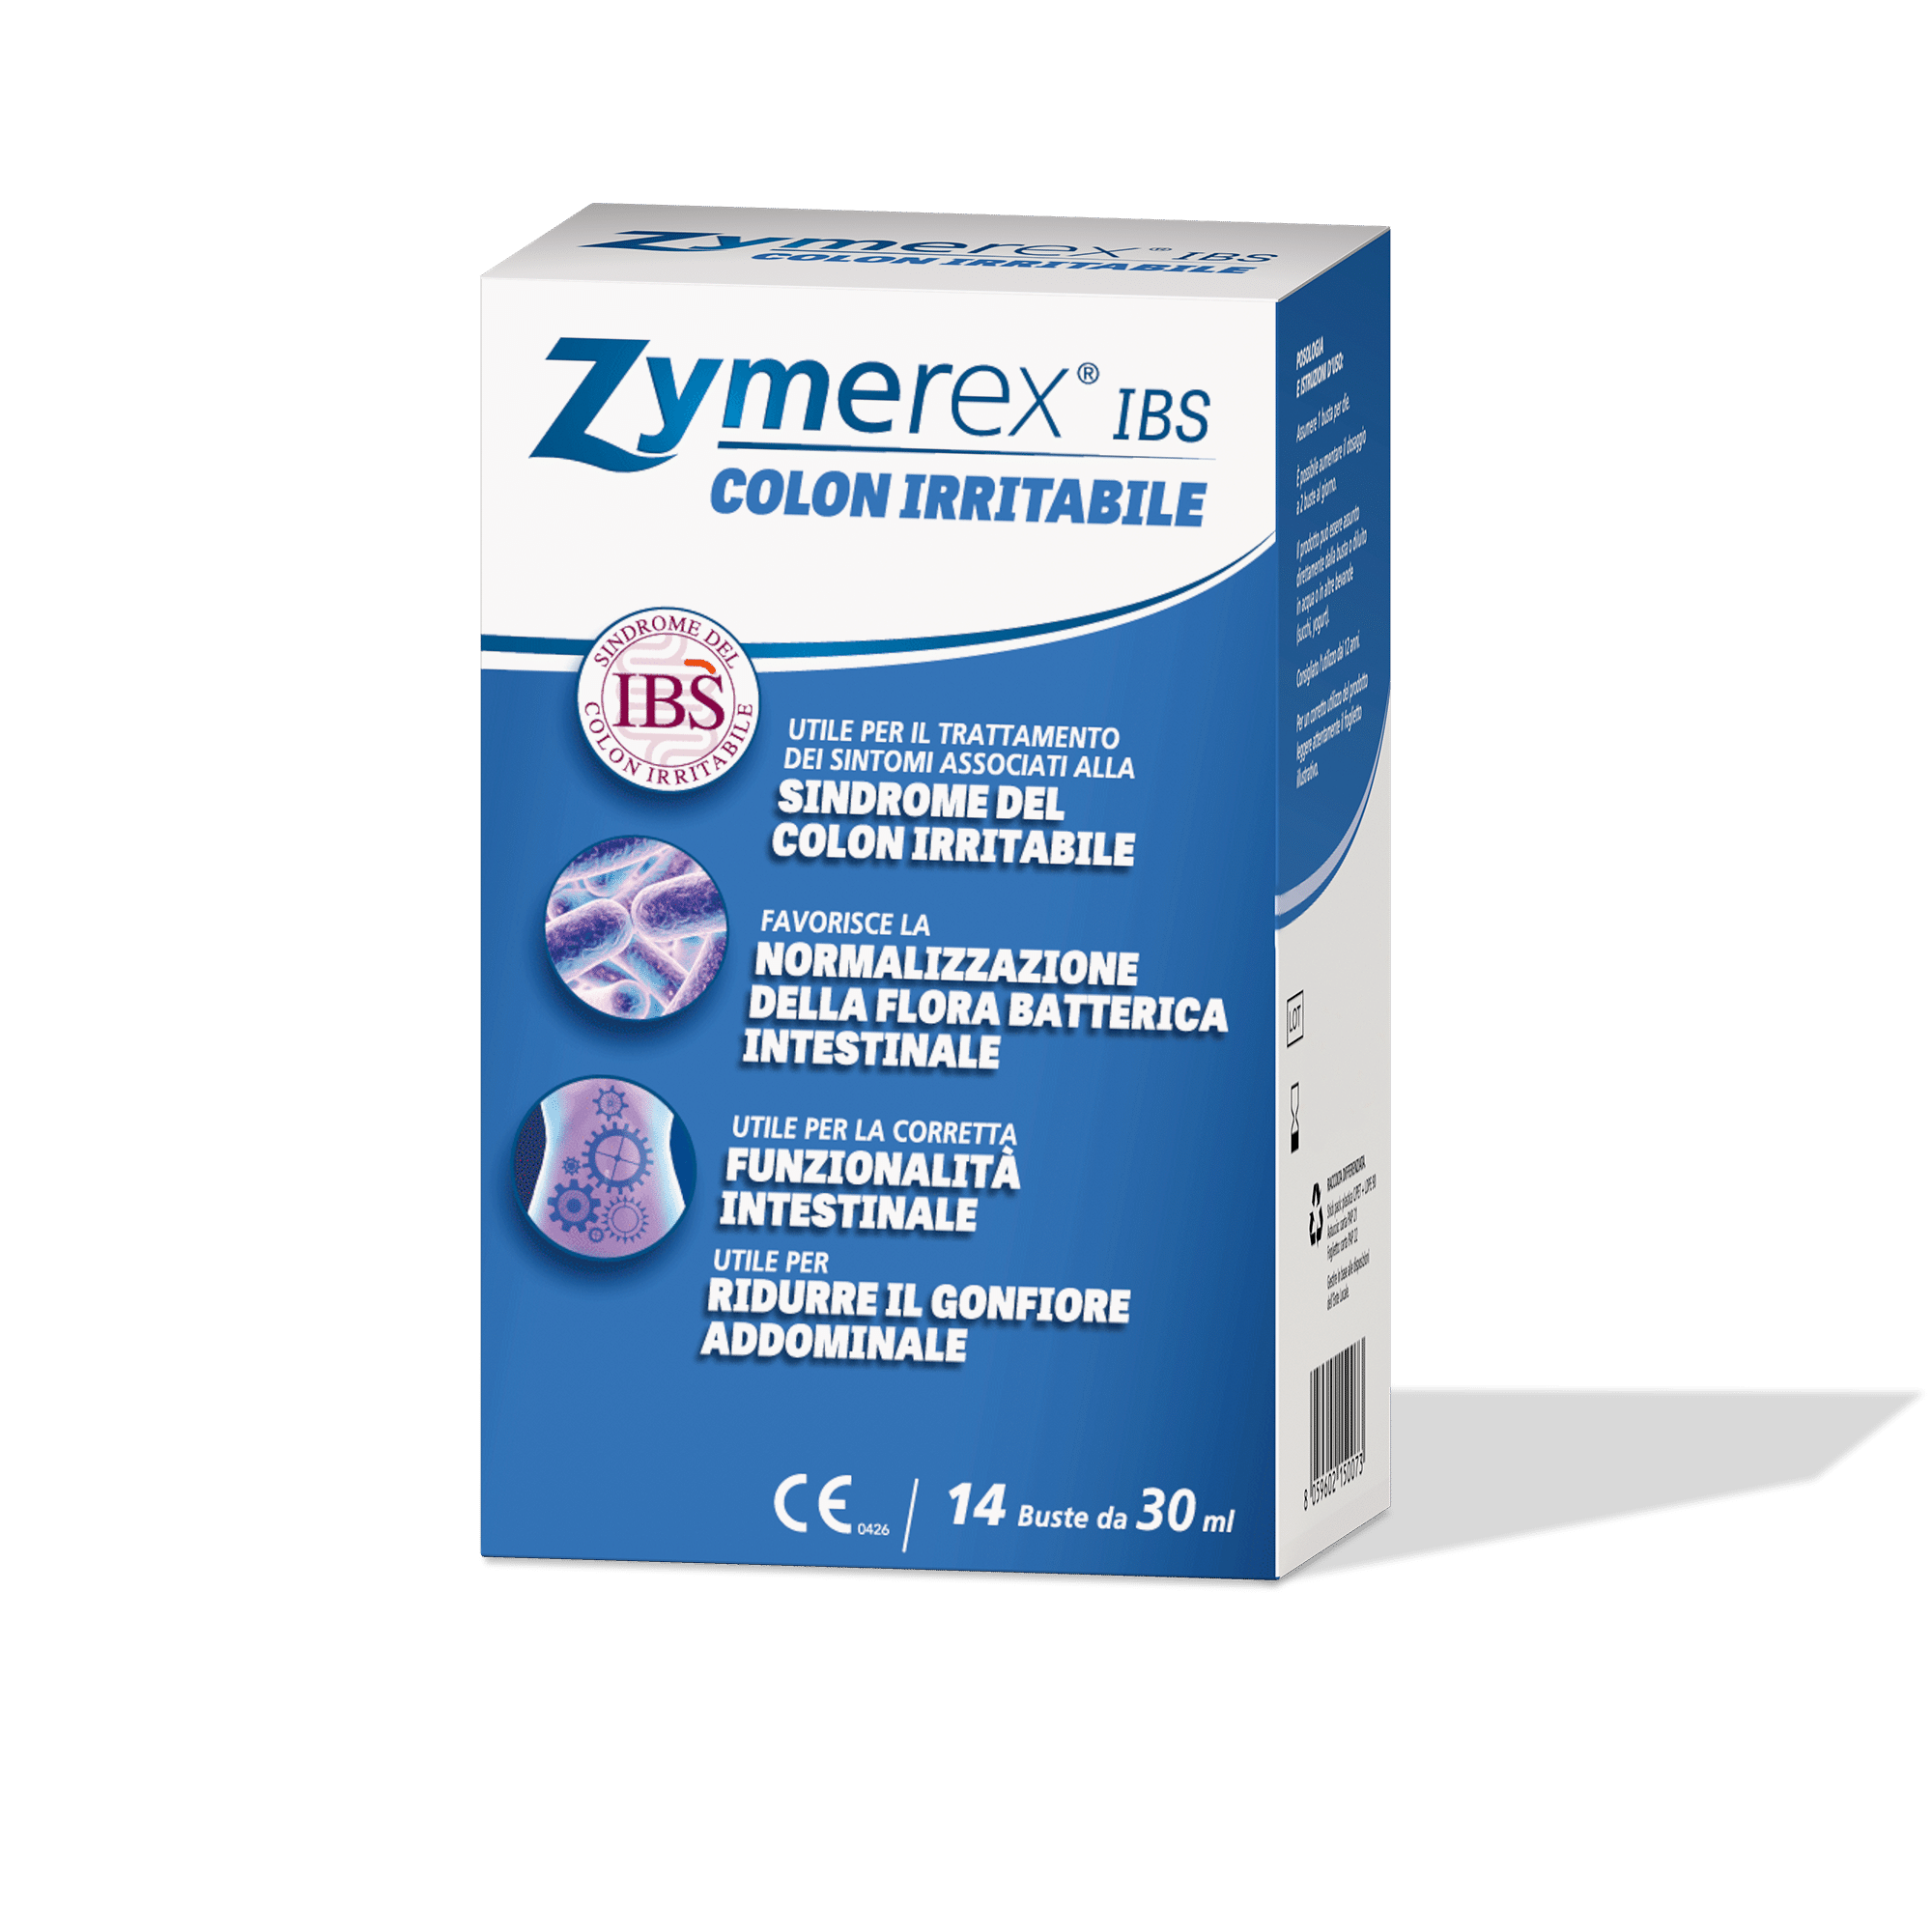 zymerex IBS colon irritabile confezione